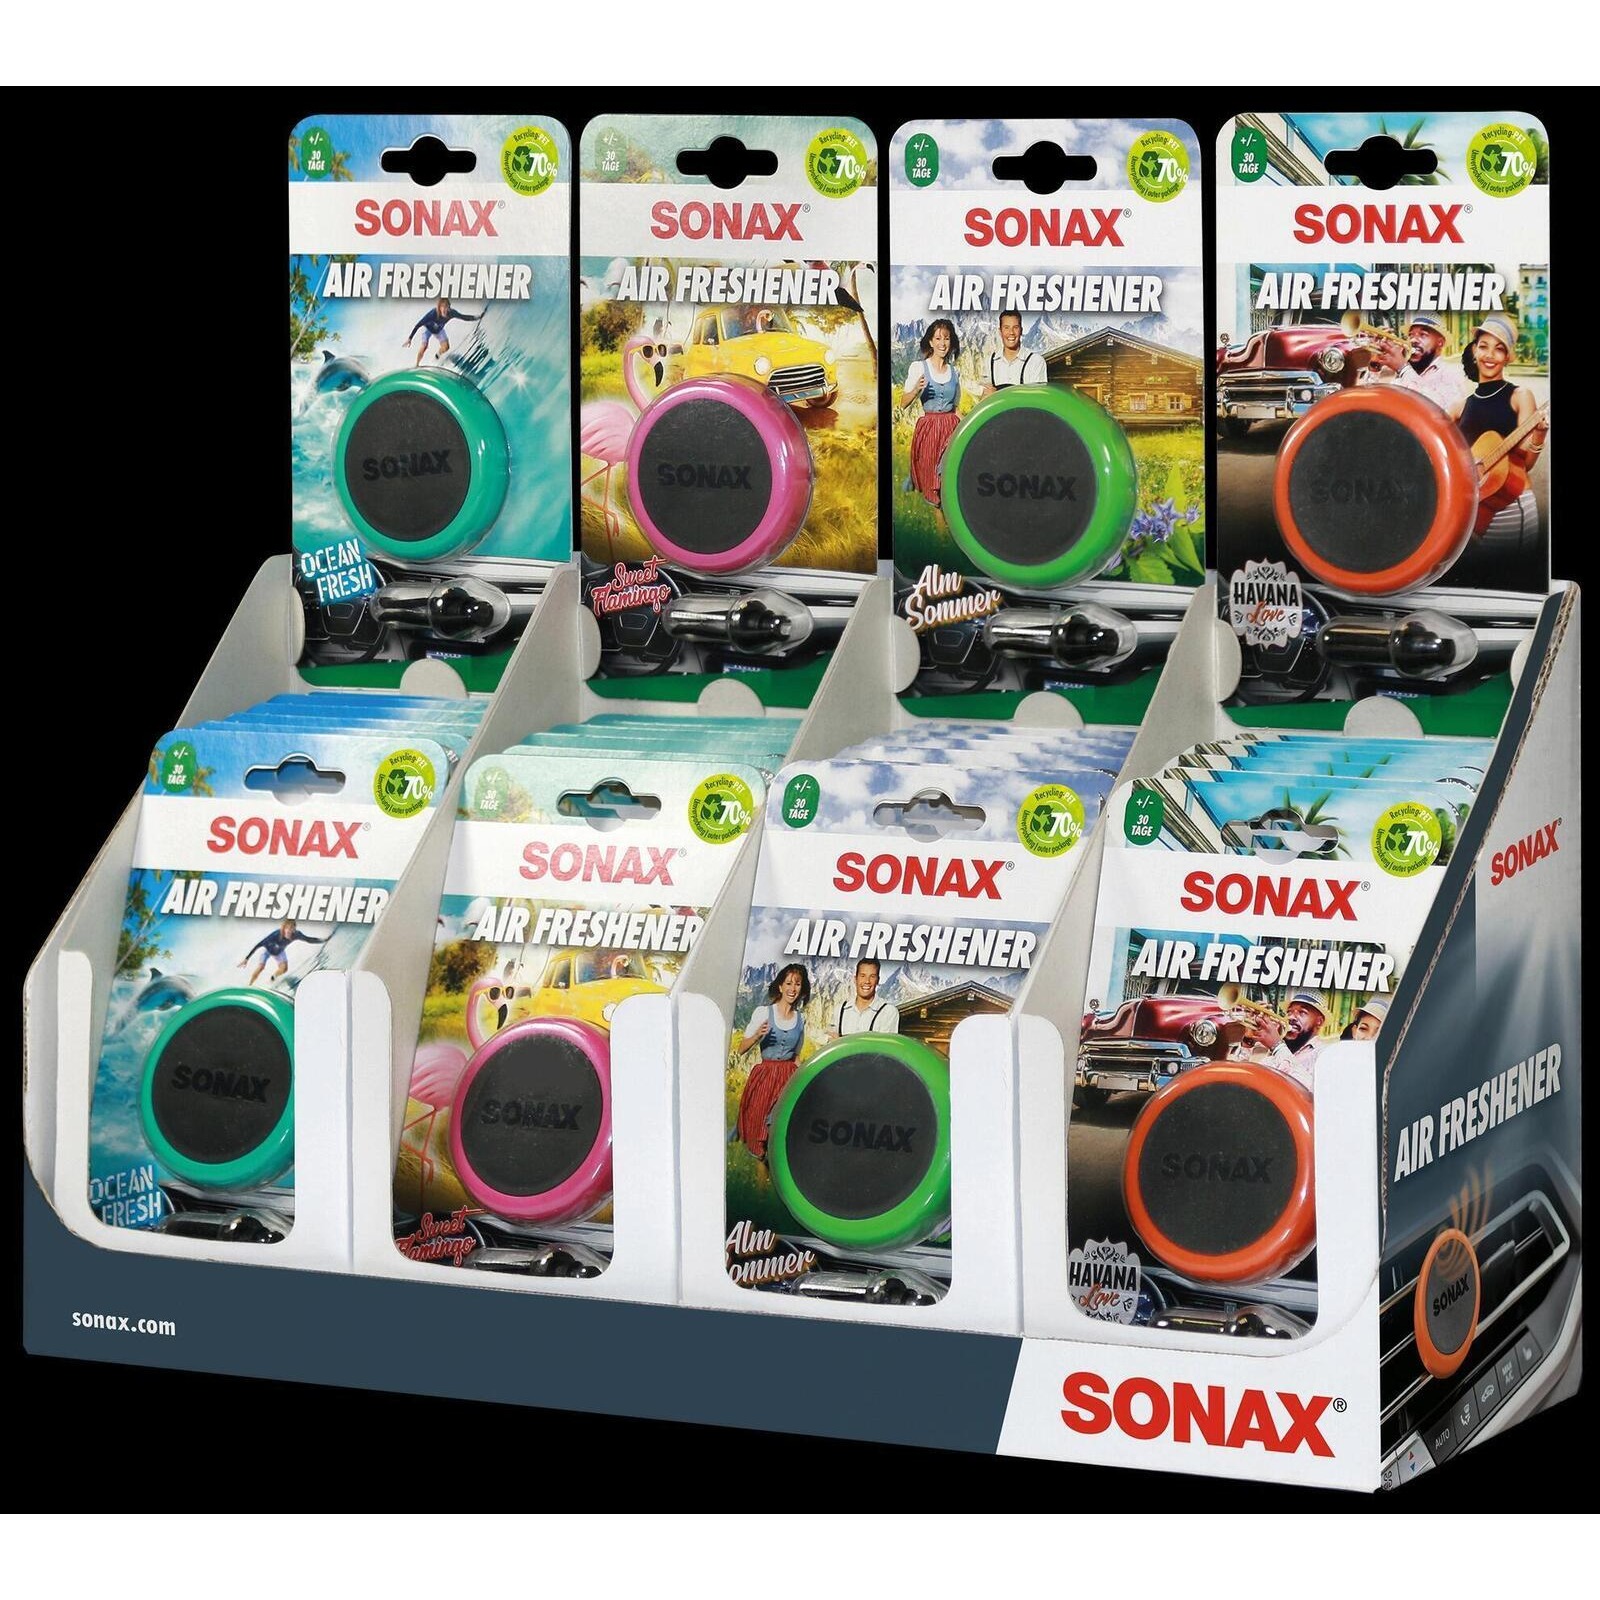 SONAX Lufterfrischer Air Freshener Thekendisplay gemischt